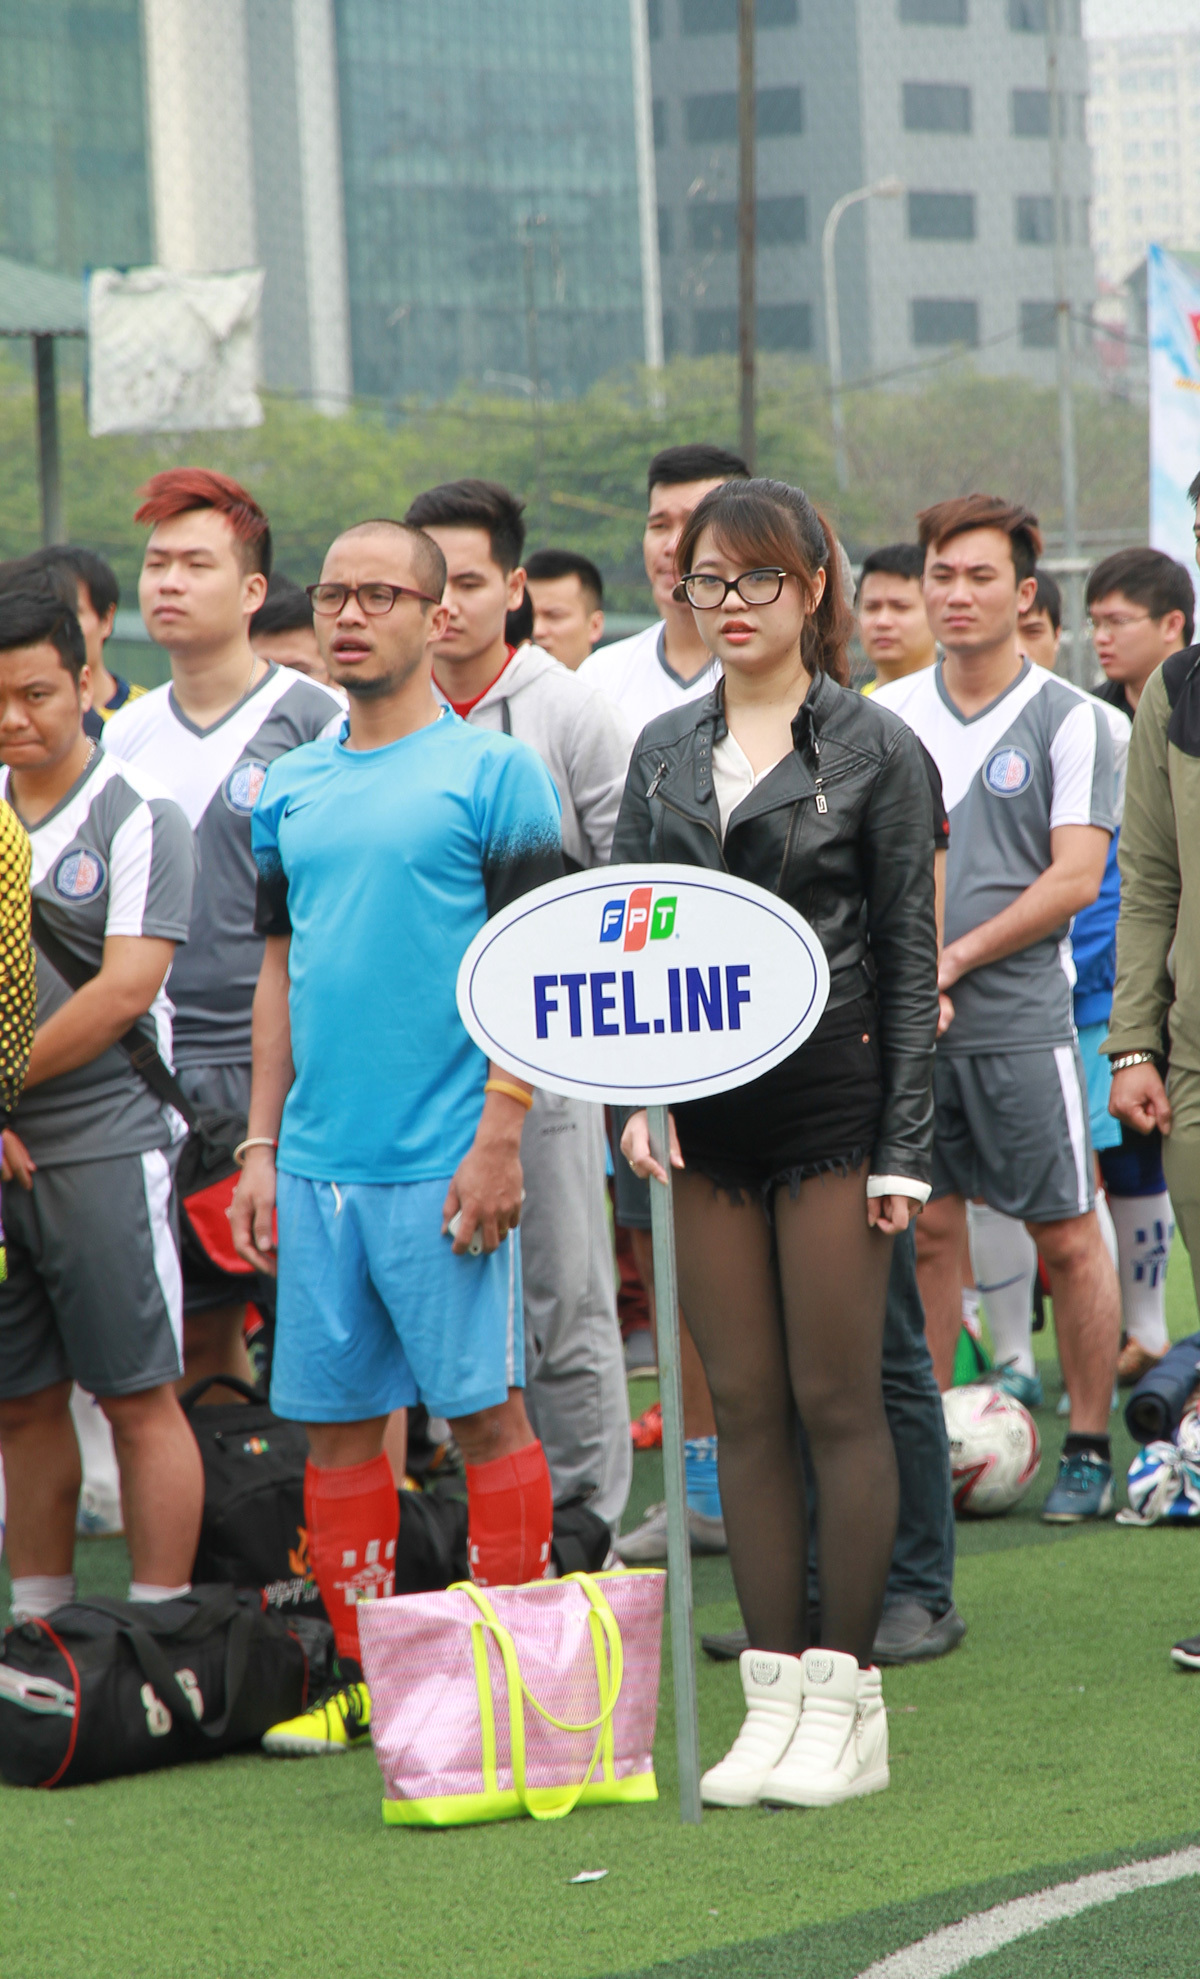 <p> Mùa giải nào Trần Nữ Thạch Linh, FPT Telecom, cũng có mặt trên sân để cổ vũ nhiệt tình cho đội nhà. Cô là cổ động viên trung thành của đội bóng Viễn thông. </p>